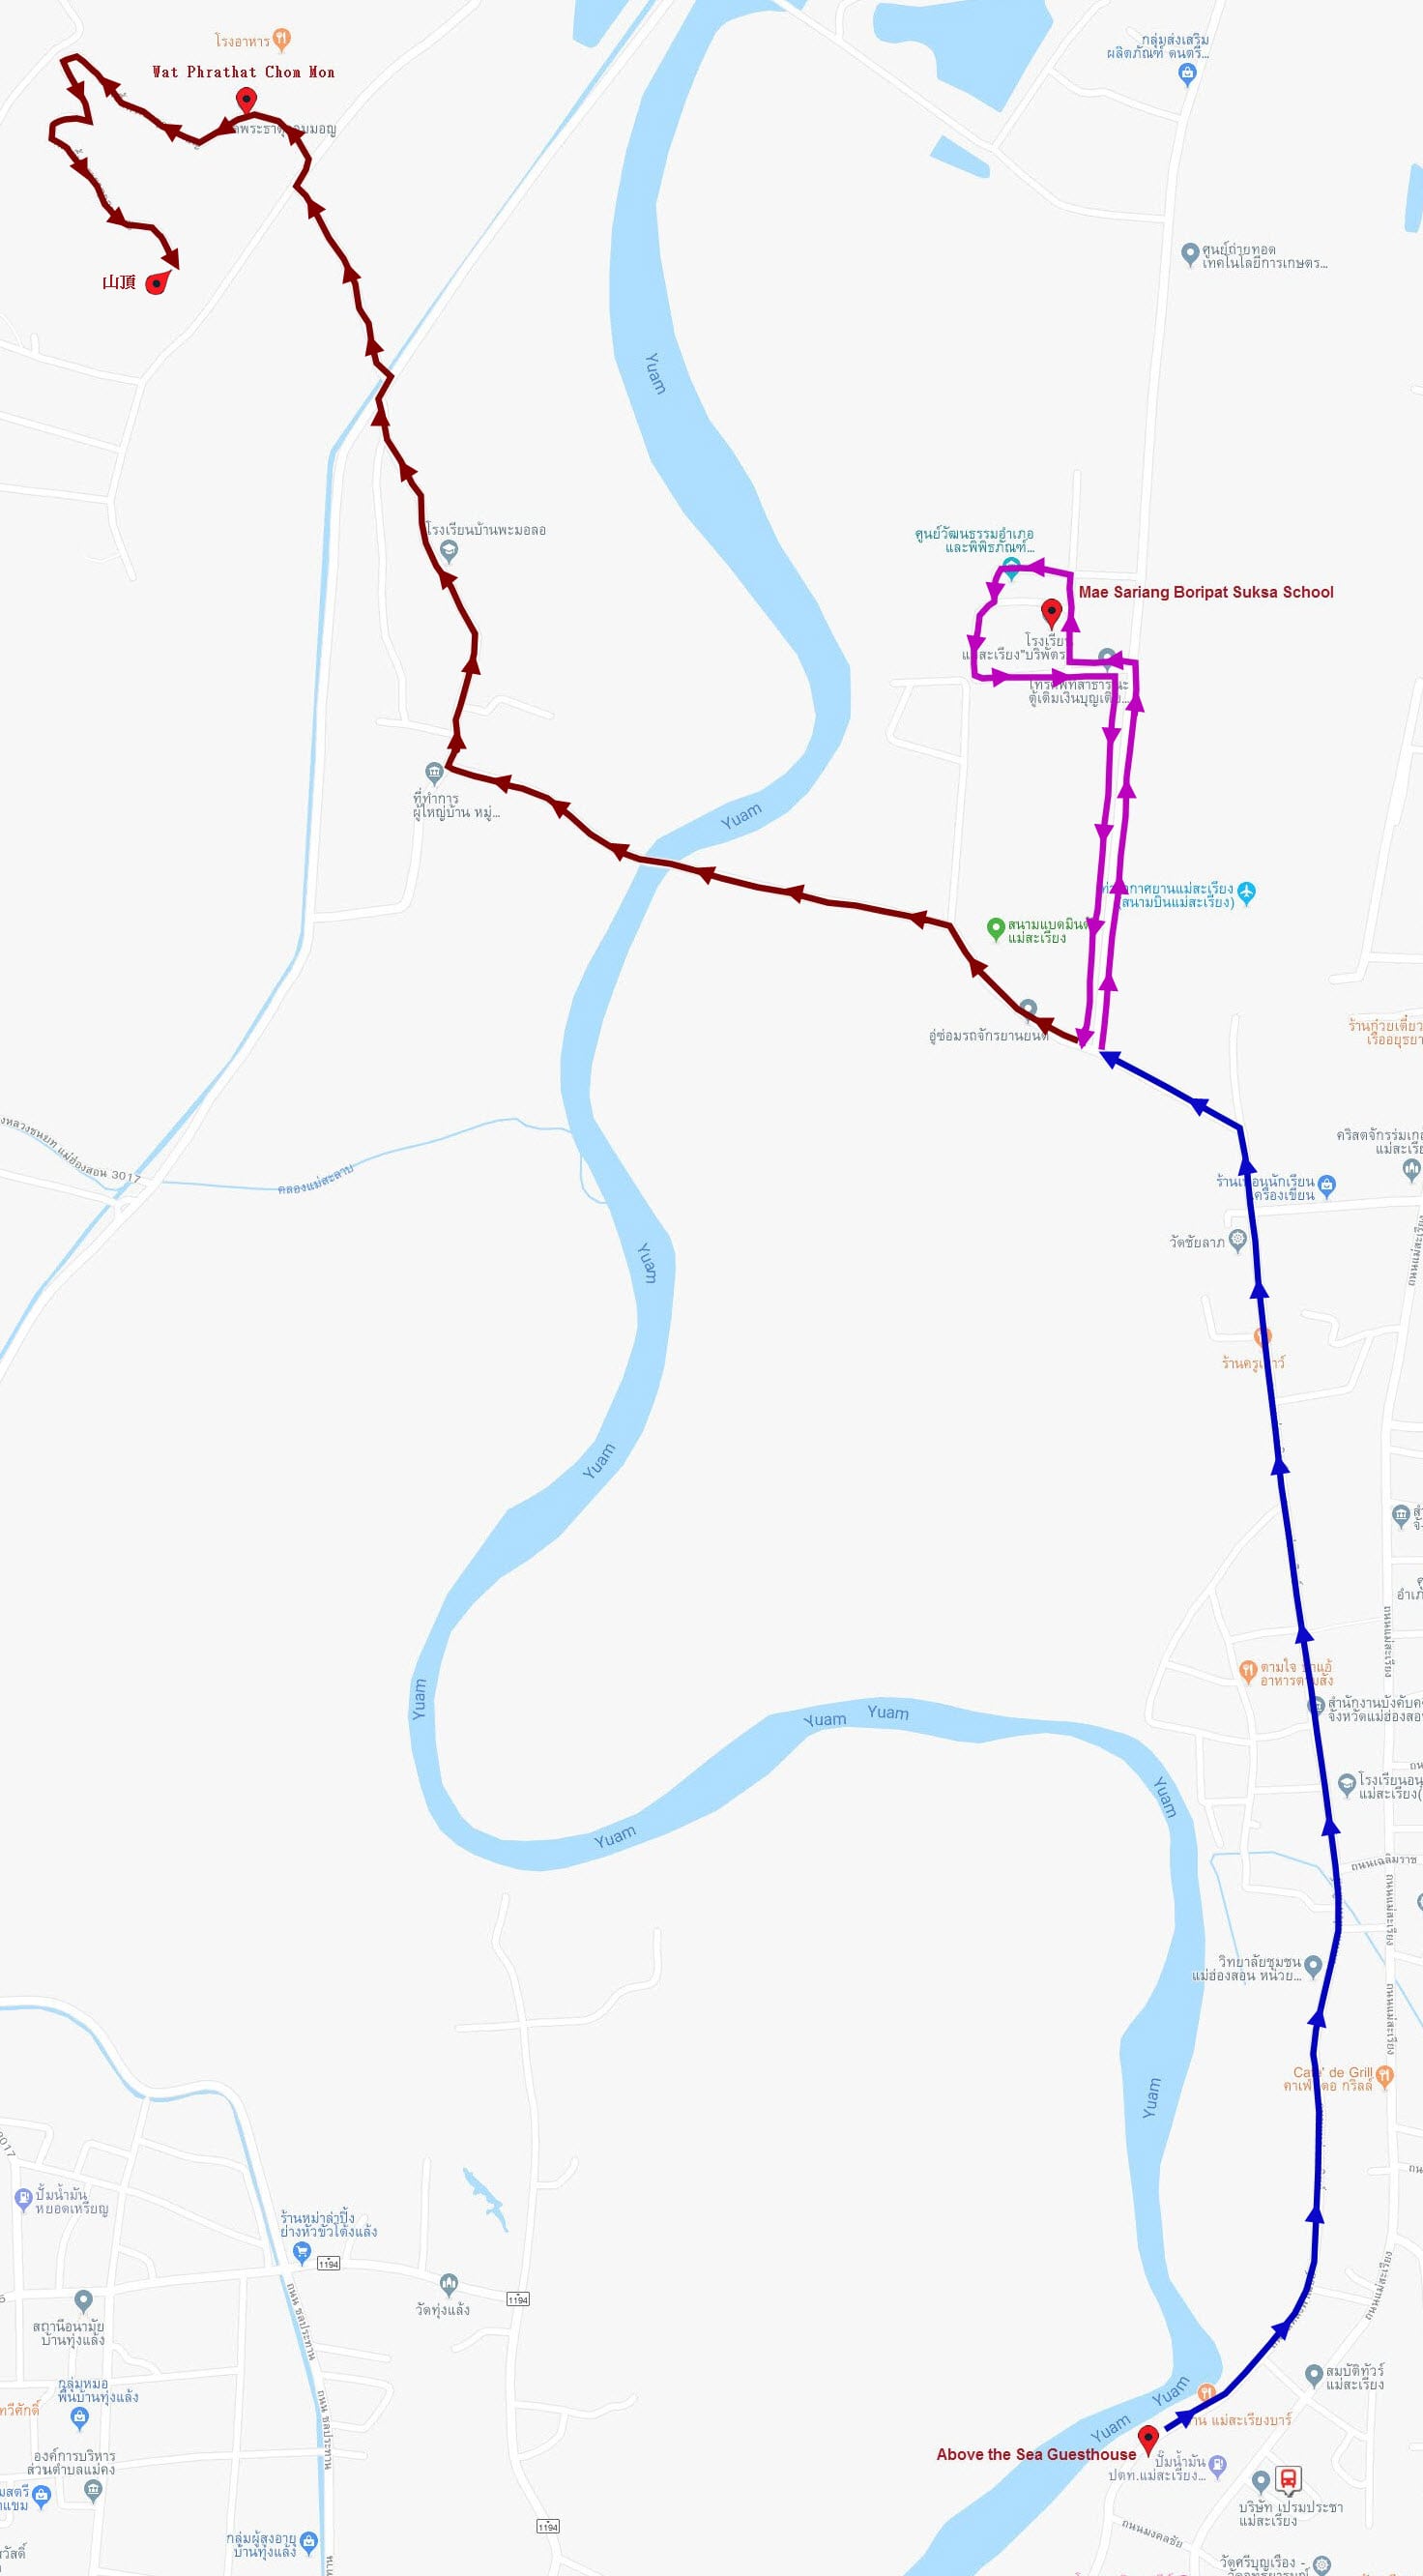 泰國夜沙良 (Mae Sariang / อำเภอแม่สะเรียง) 鄉鎮中心步行到 Wat Phrathat Chom Mon 山頂的路線地圖